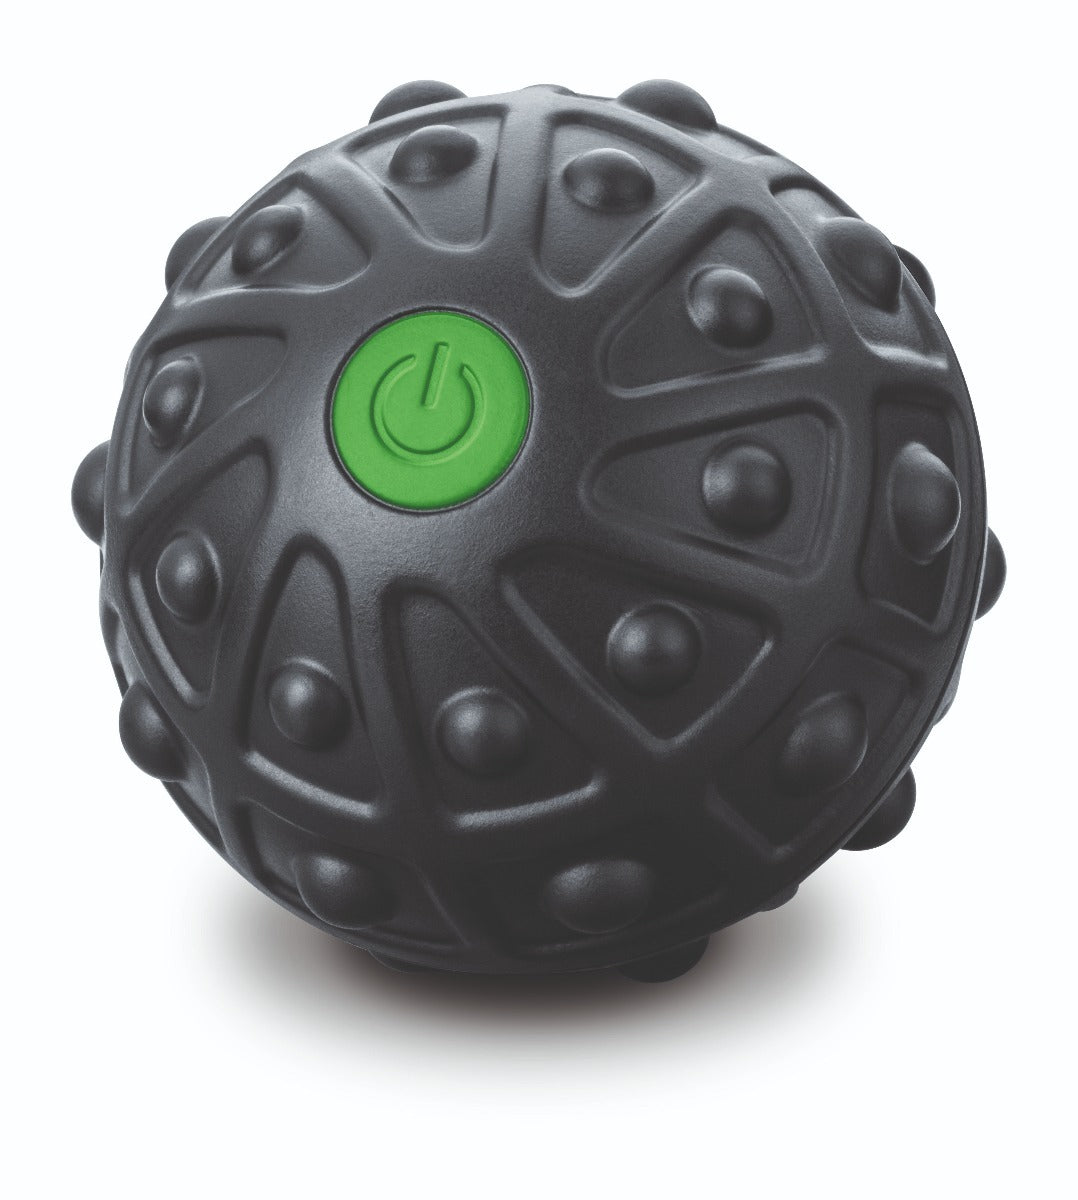 Brug Beurer MG10 Massagebold med vibration til en forbedret oplevelse